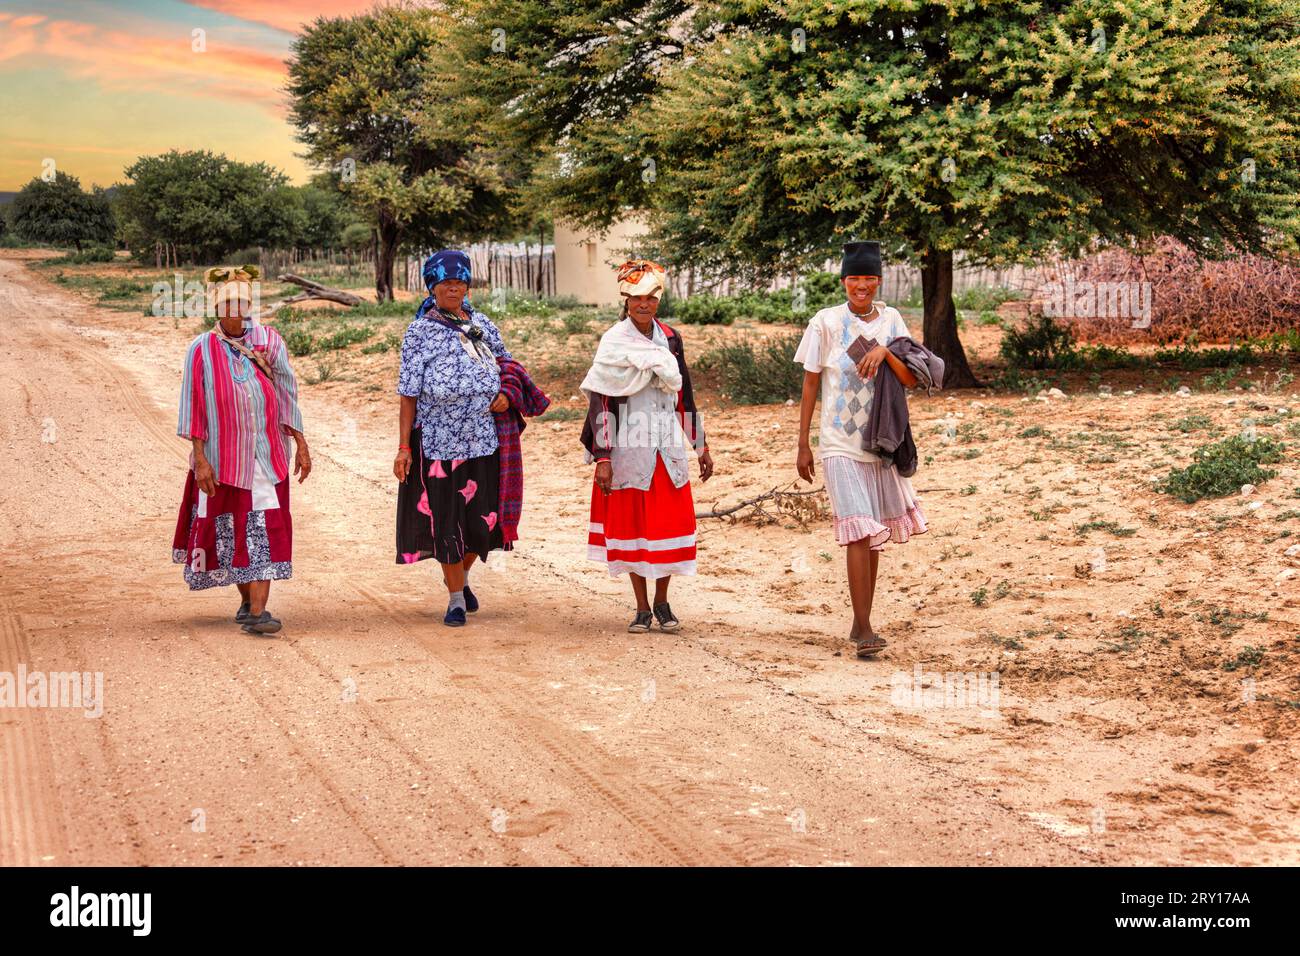 quattro donne africane basarwa camminano su una strada sterrata nel villaggio tradizionale Foto Stock